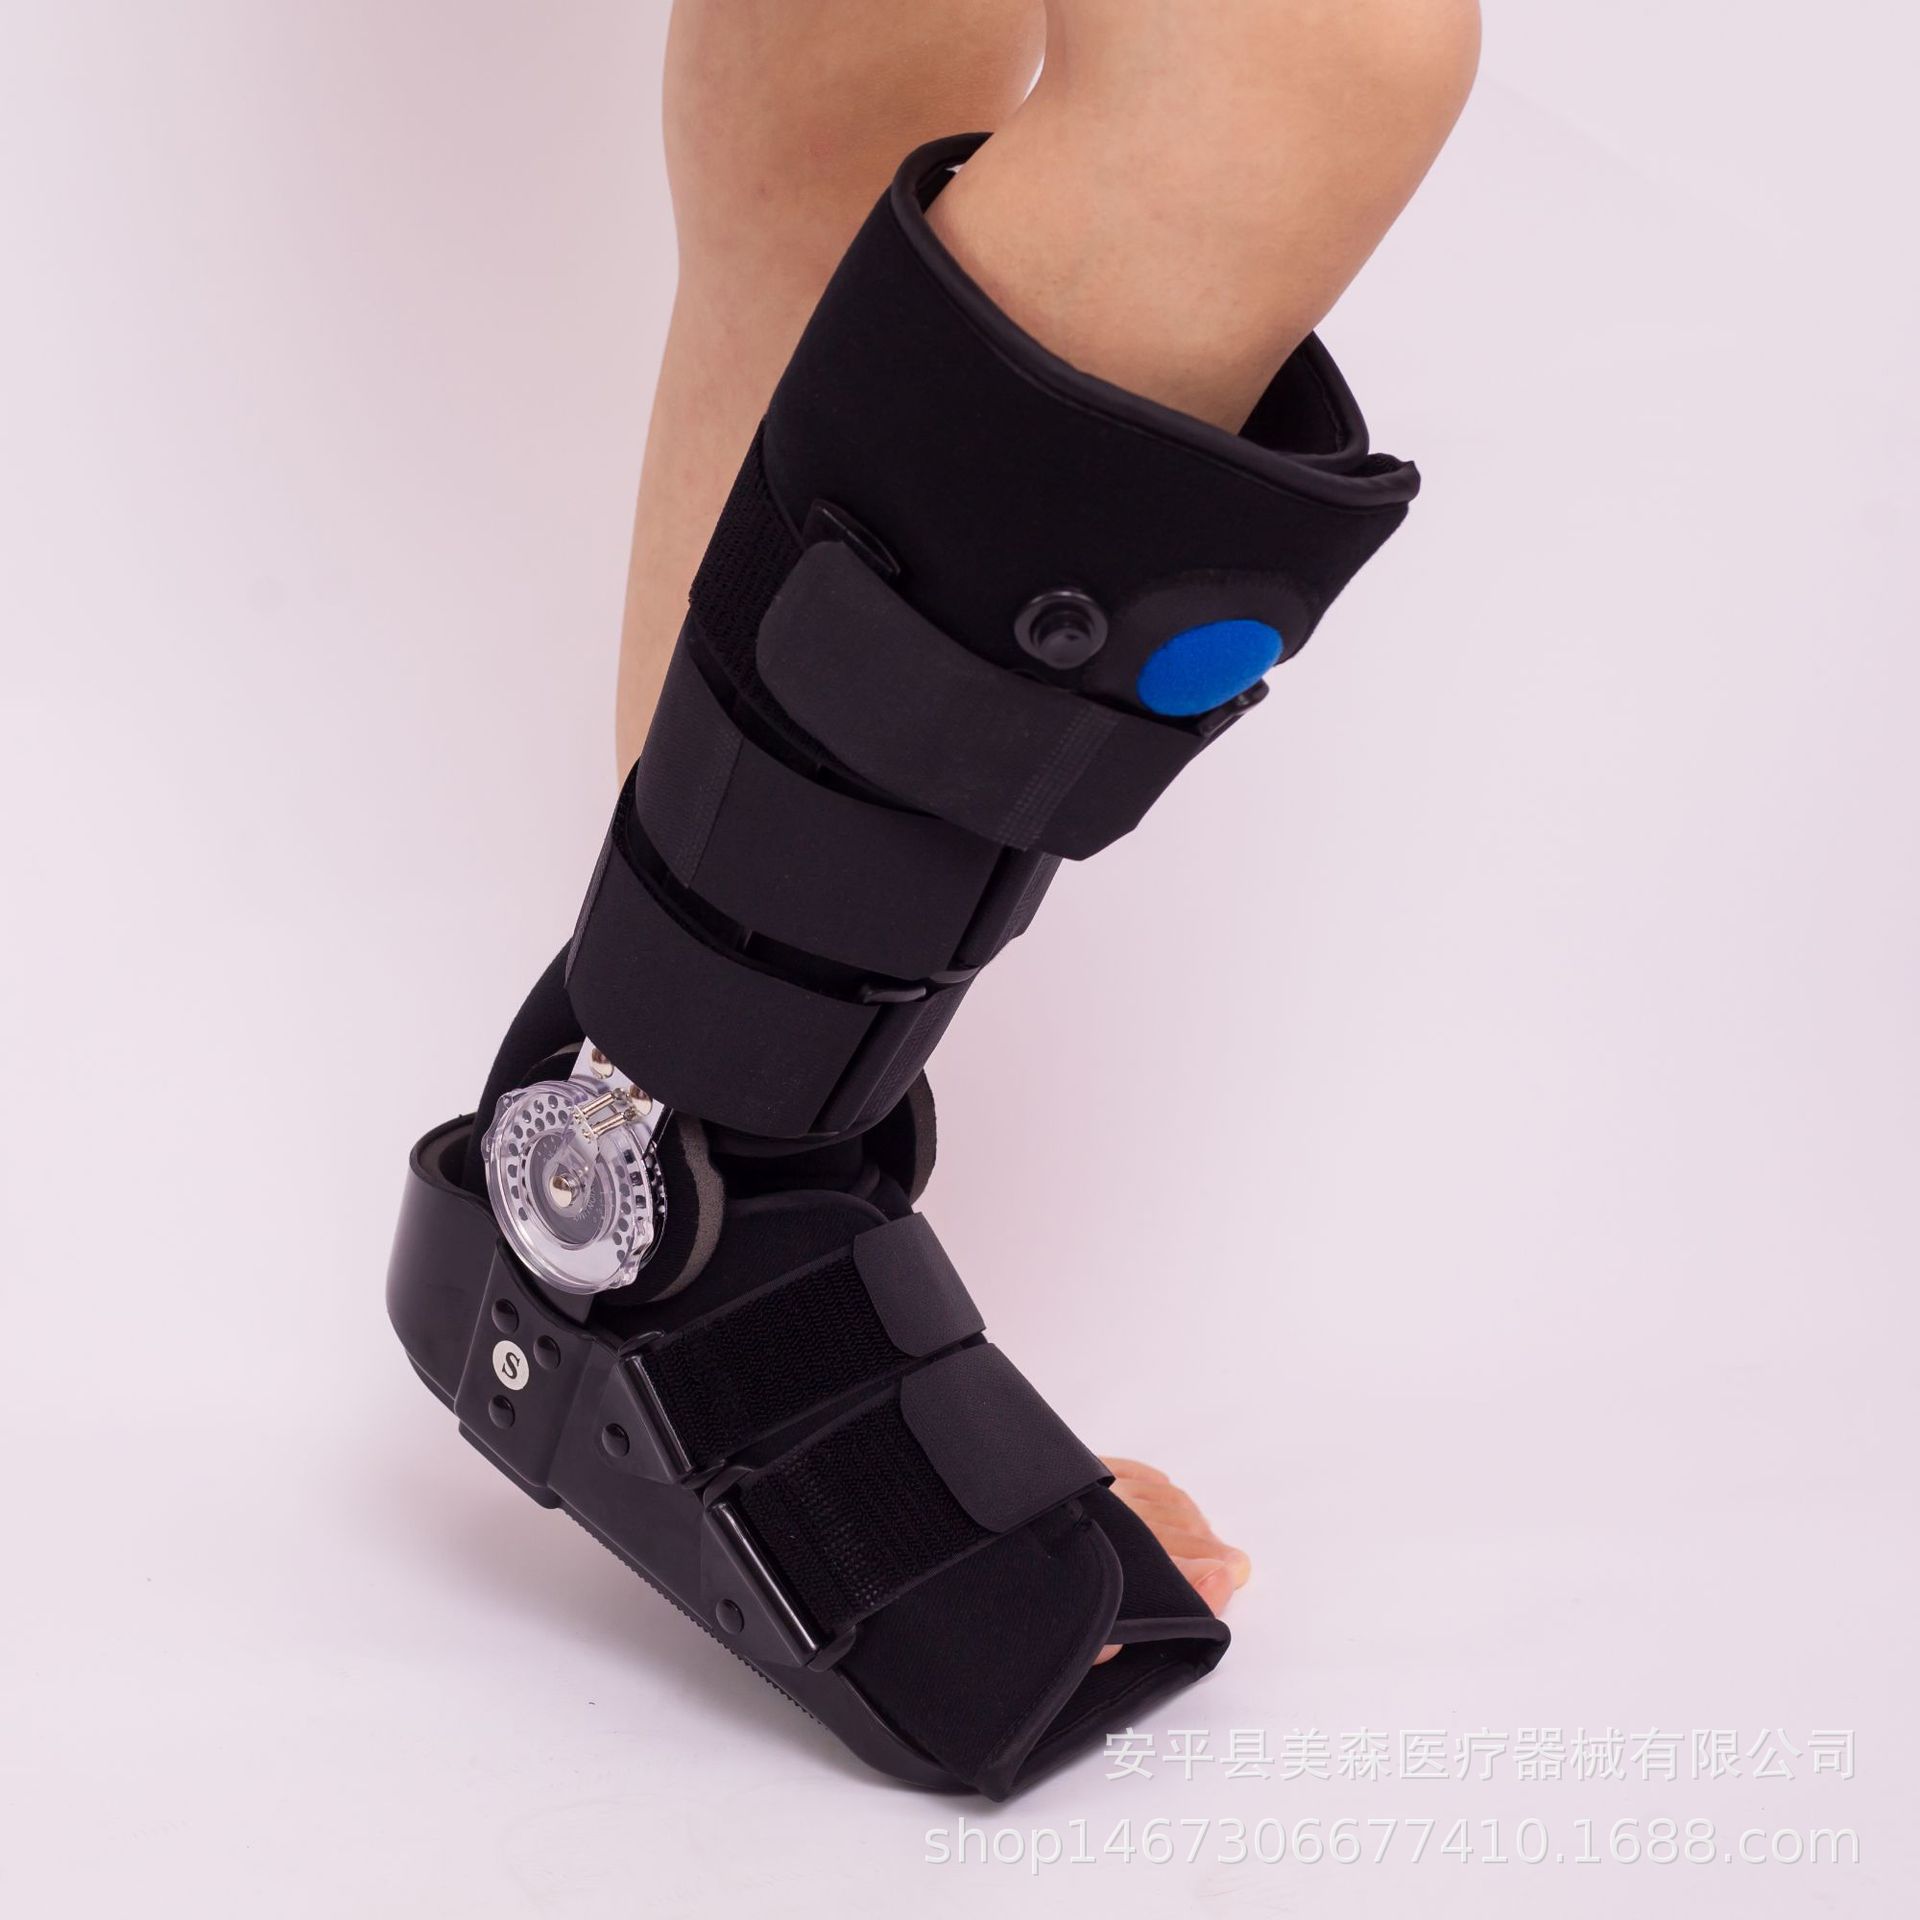 卡盘高帮助行鞋 气囊气垫款 跟腱靴踝关节固定支具 脚踝骨折护具